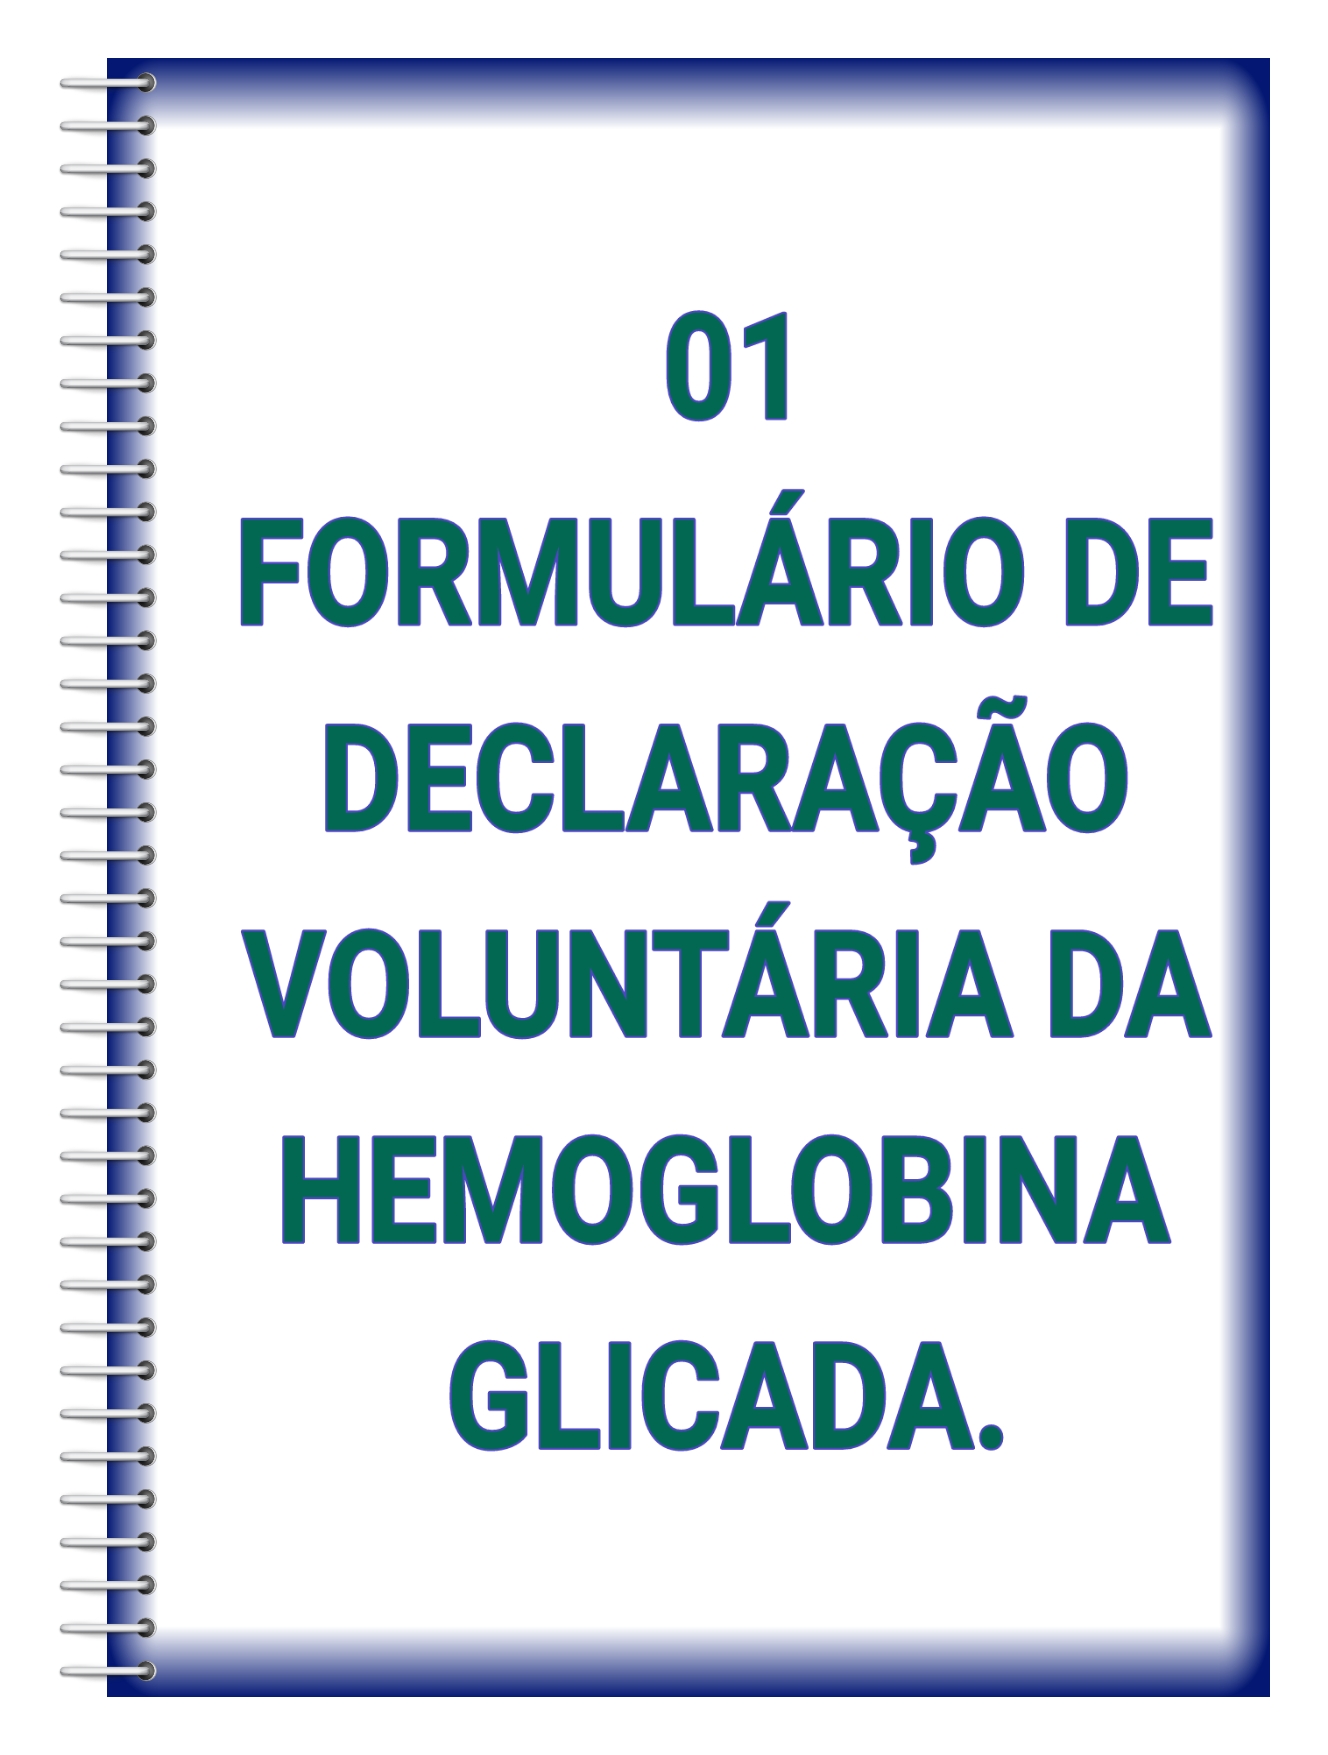 Formulário da Hemoglobina Glicada